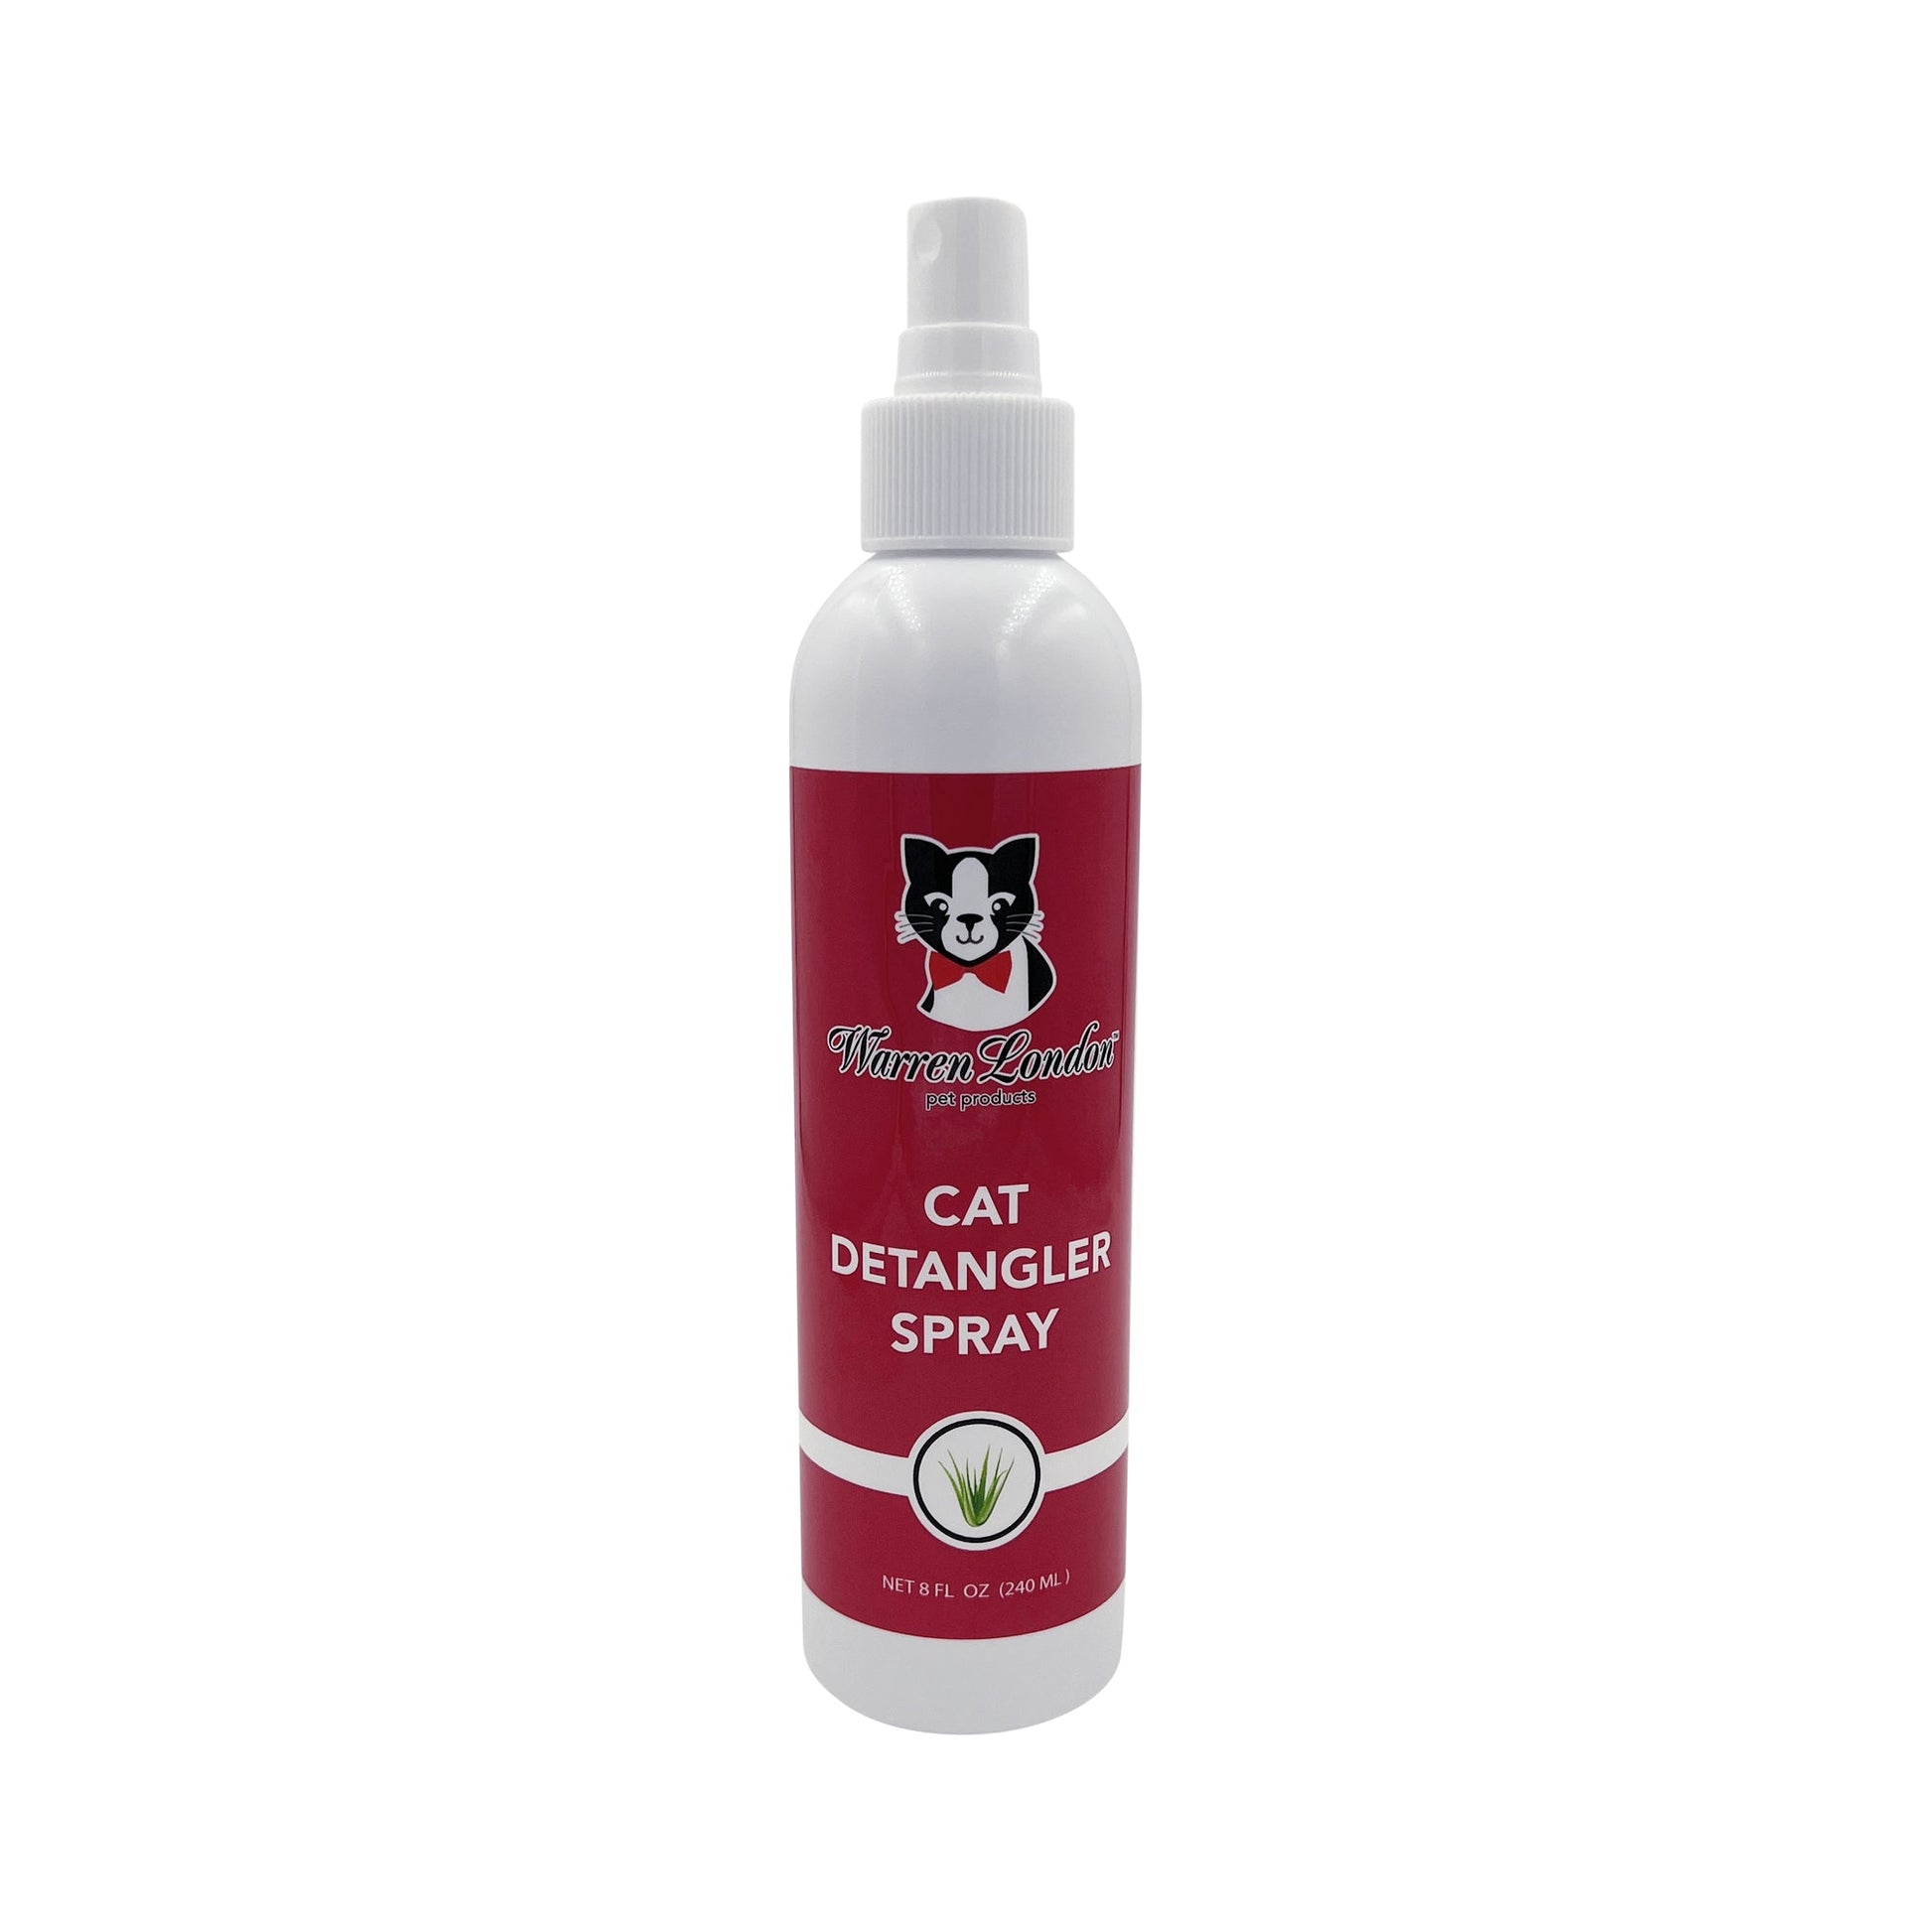 Cat Detangler Spray - Unscented Cat Supplies Warren London 